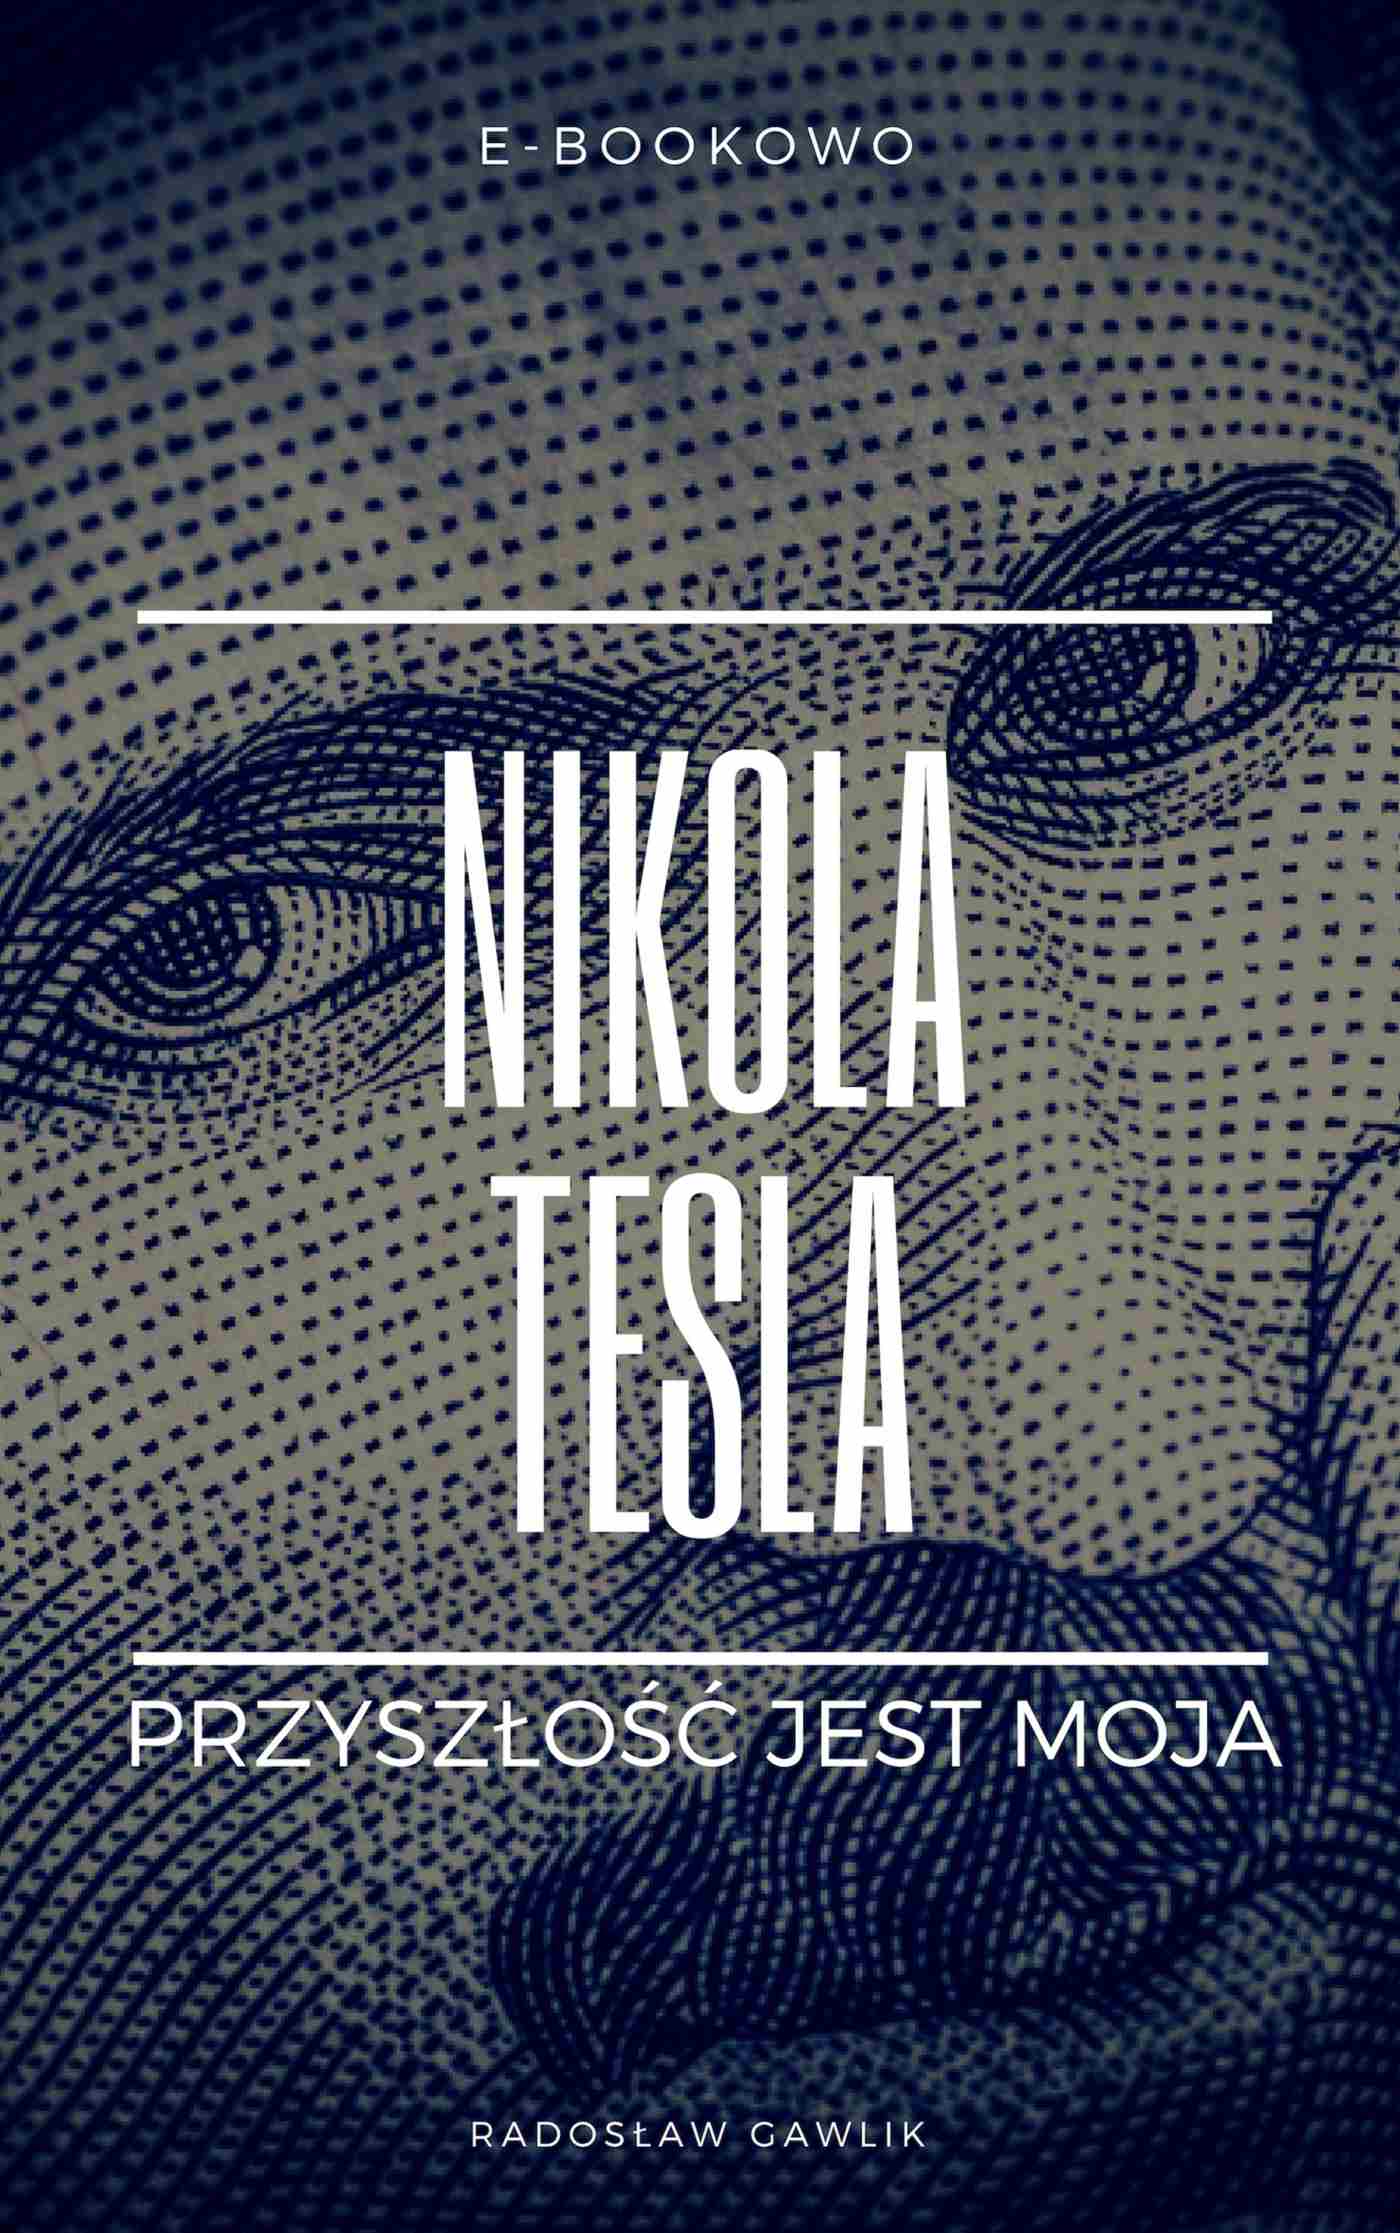 Okładka:Nikola Tesla. Przyszłość jest moja 